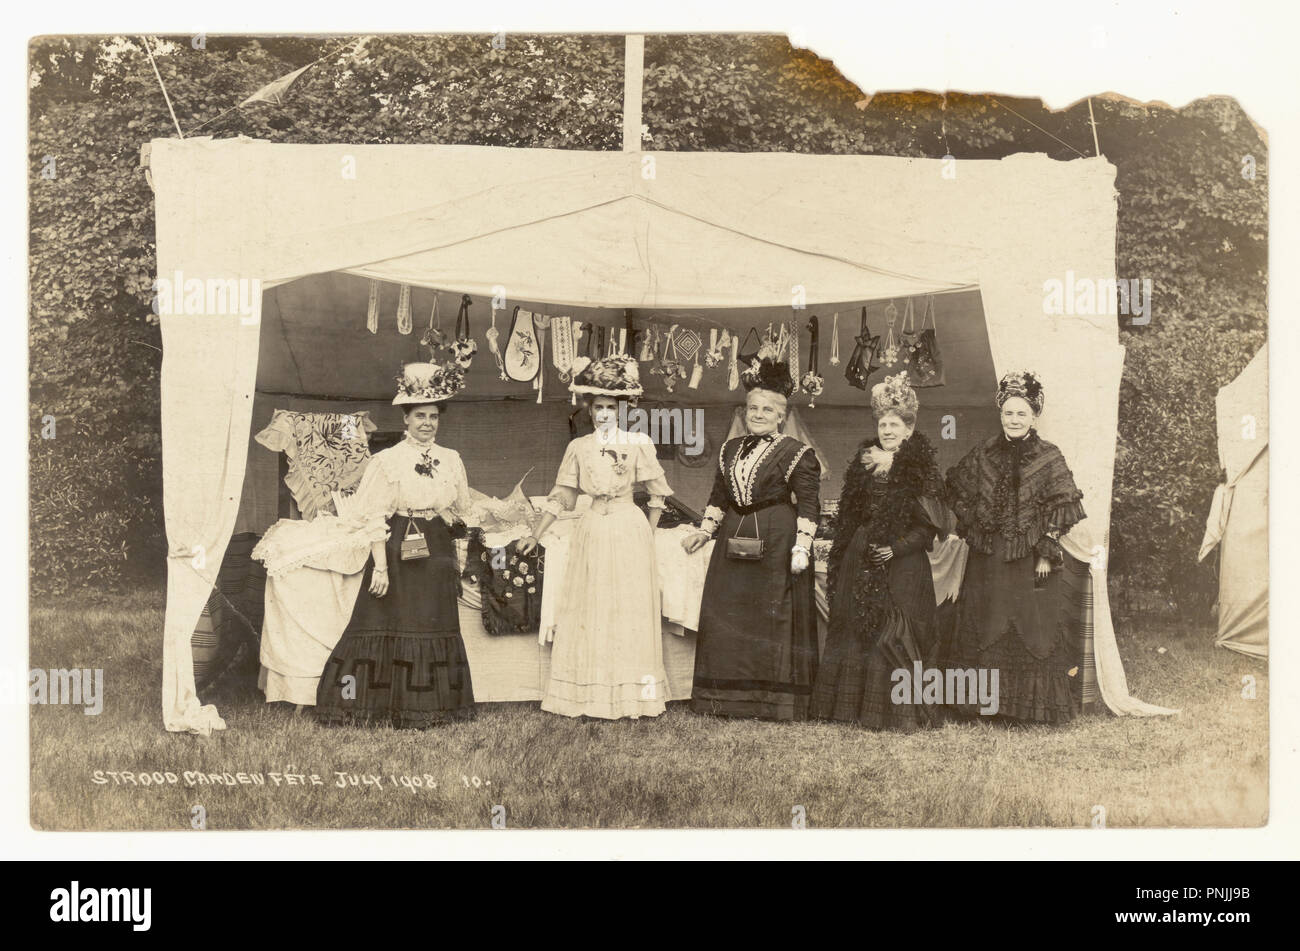 Carte postale photographique originale de l'époque édouardienne de l'été des dames de Strood Garden Fete posant pour une photographie par une cabine vendant des cadeaux cousus à la main et des objets artisanaux - des images merveilleuses de chapeaux, de femmes de différents âges, de tenues étonnantes. Carte postale datée de juillet 1908, Strood, Kent, Royaume-Uni Banque D'Images